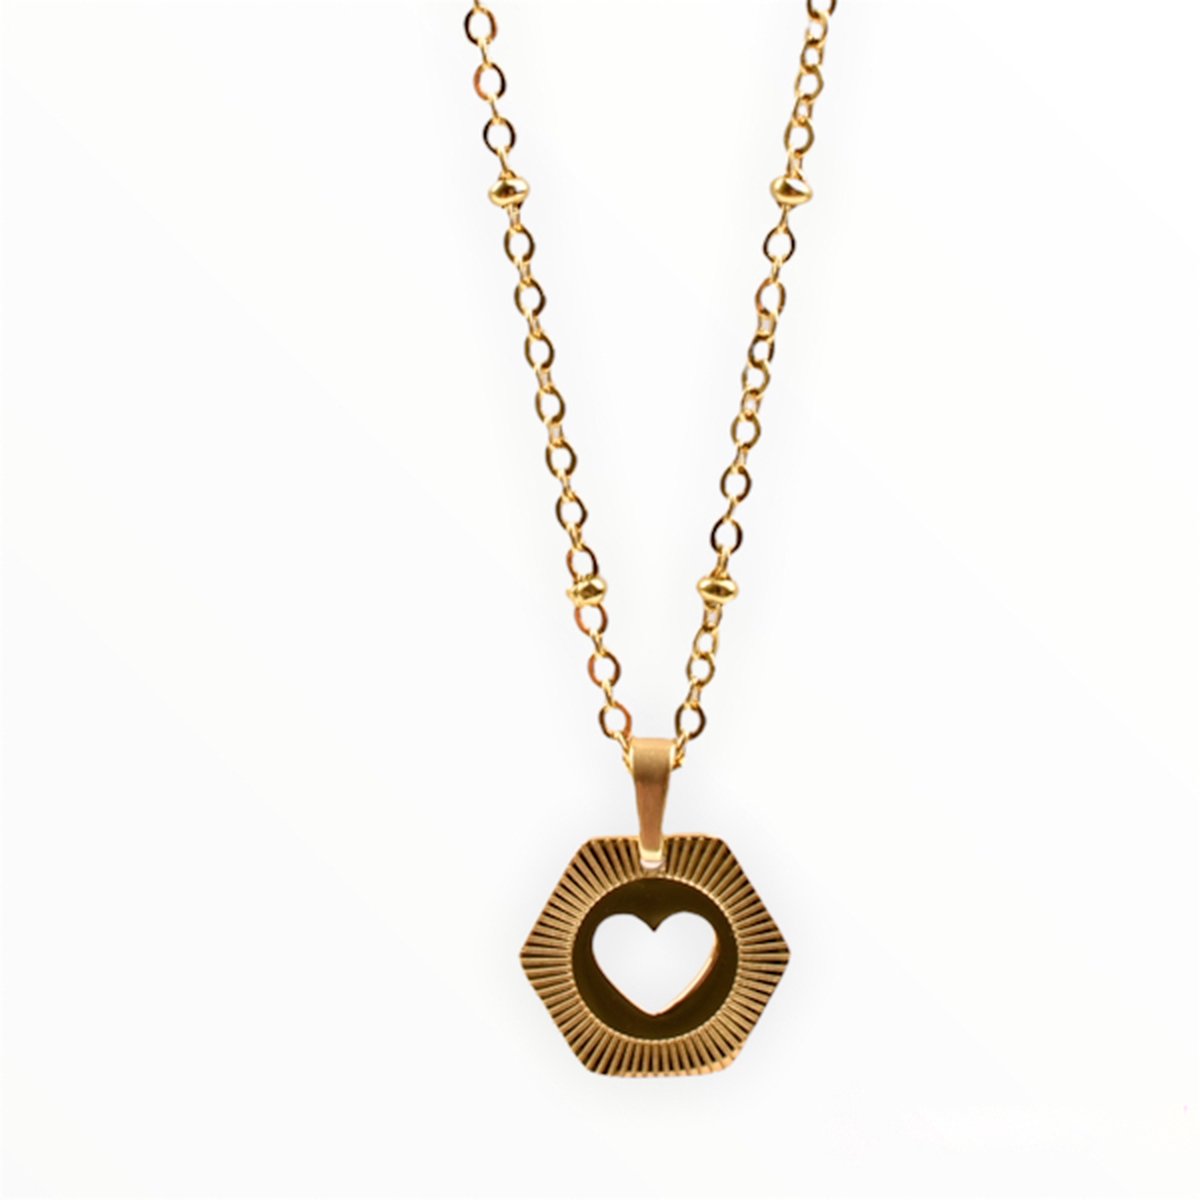 Ketting met hartje - Gouden ketting - Stainless steel - 50 cm - Valentijn cadeau voor haar